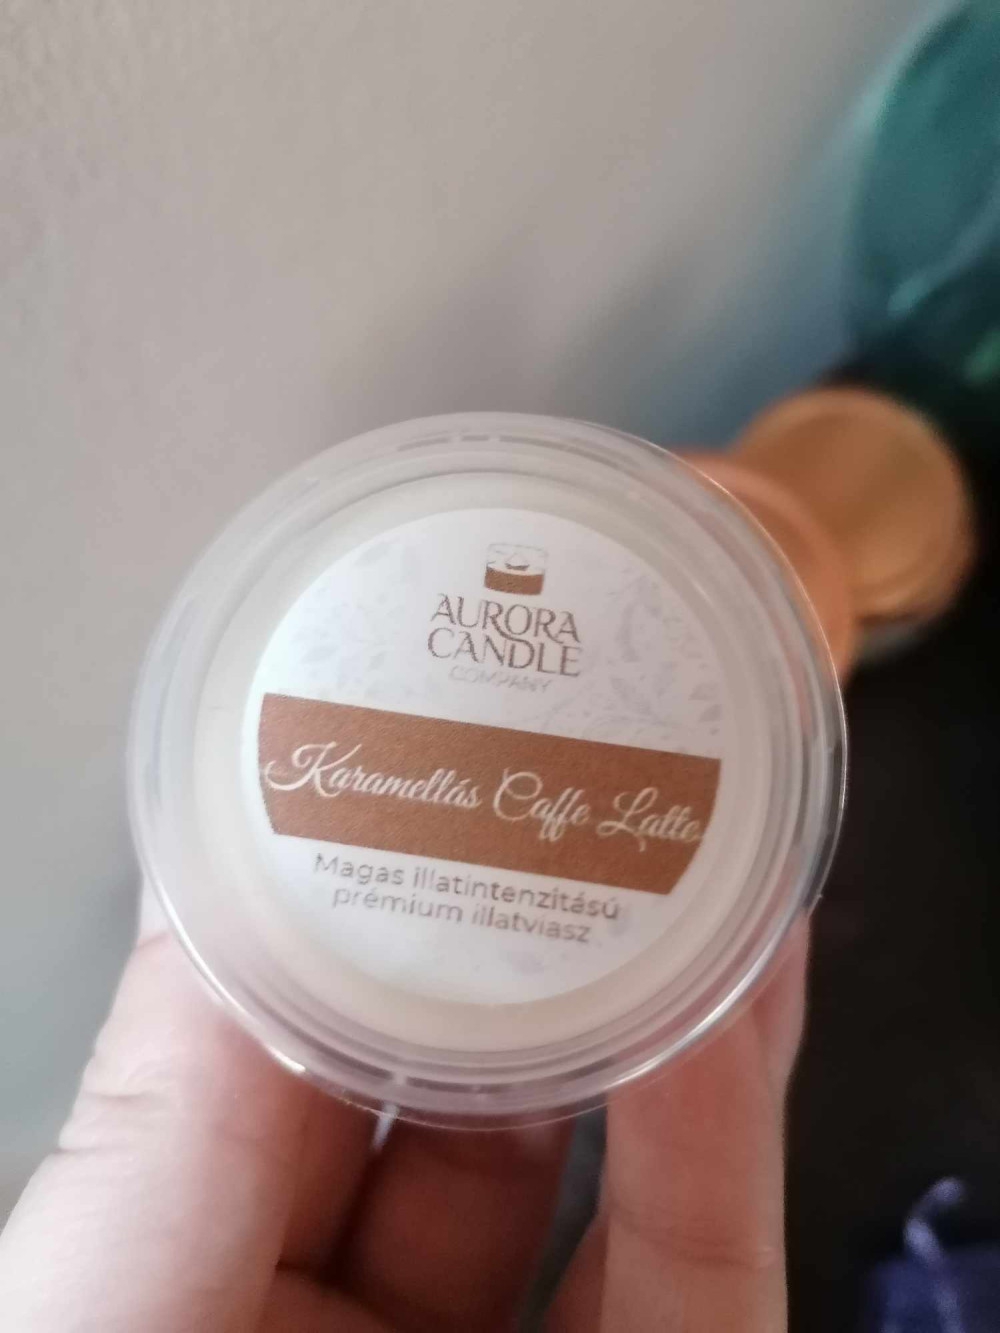 Karamellás Caffe Latte - Mini illatviasz
